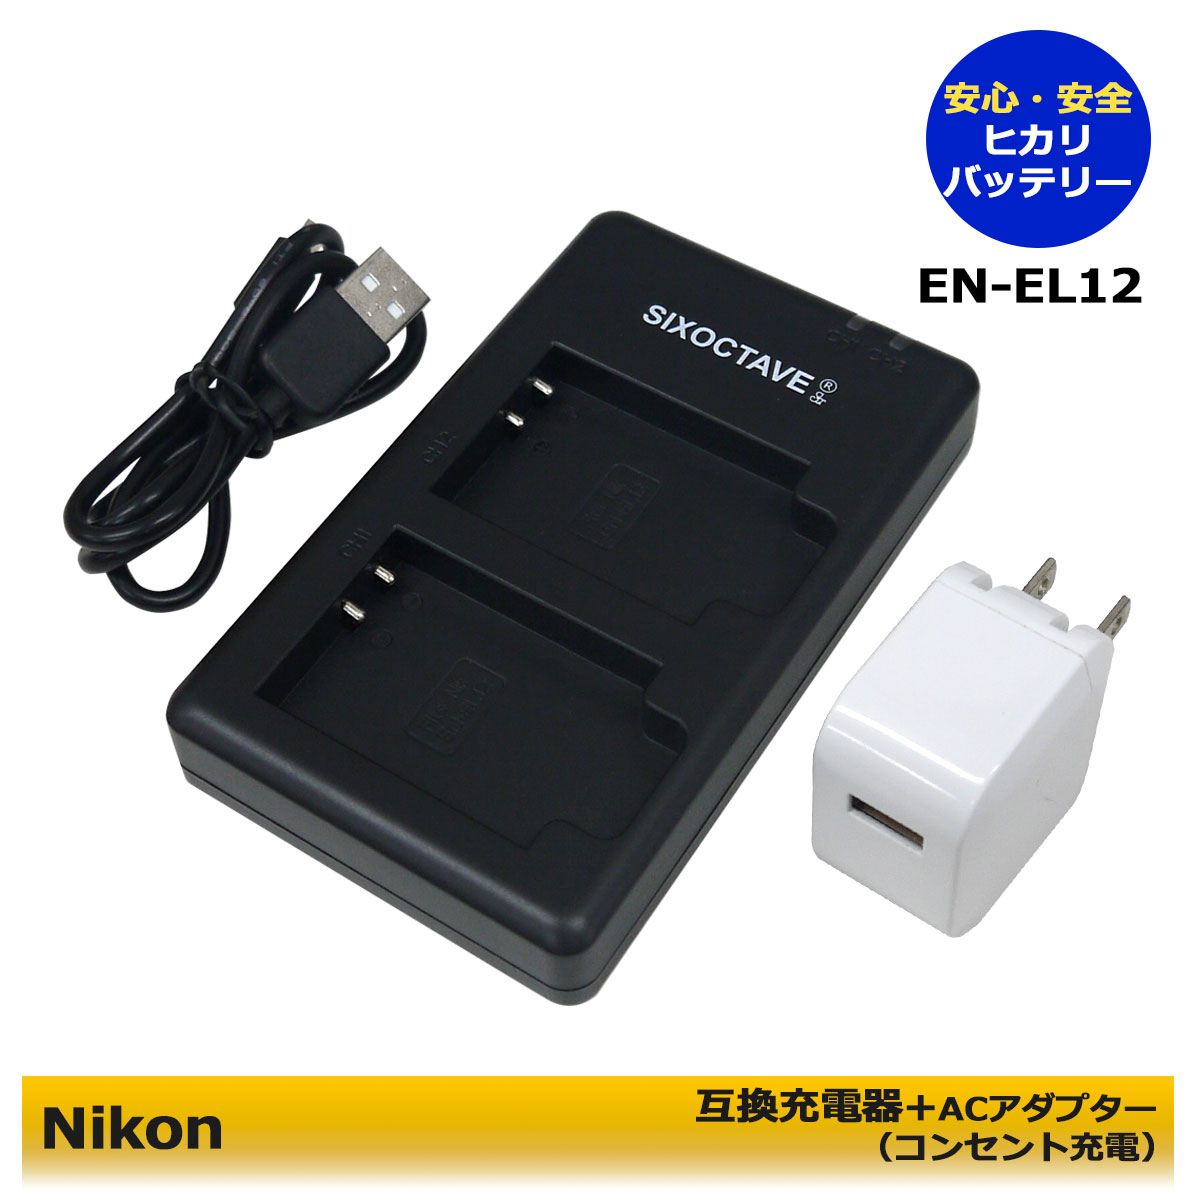 【楽天市場】送料無料 Nikon EN-EL12 MH-65P 互換USB充電器